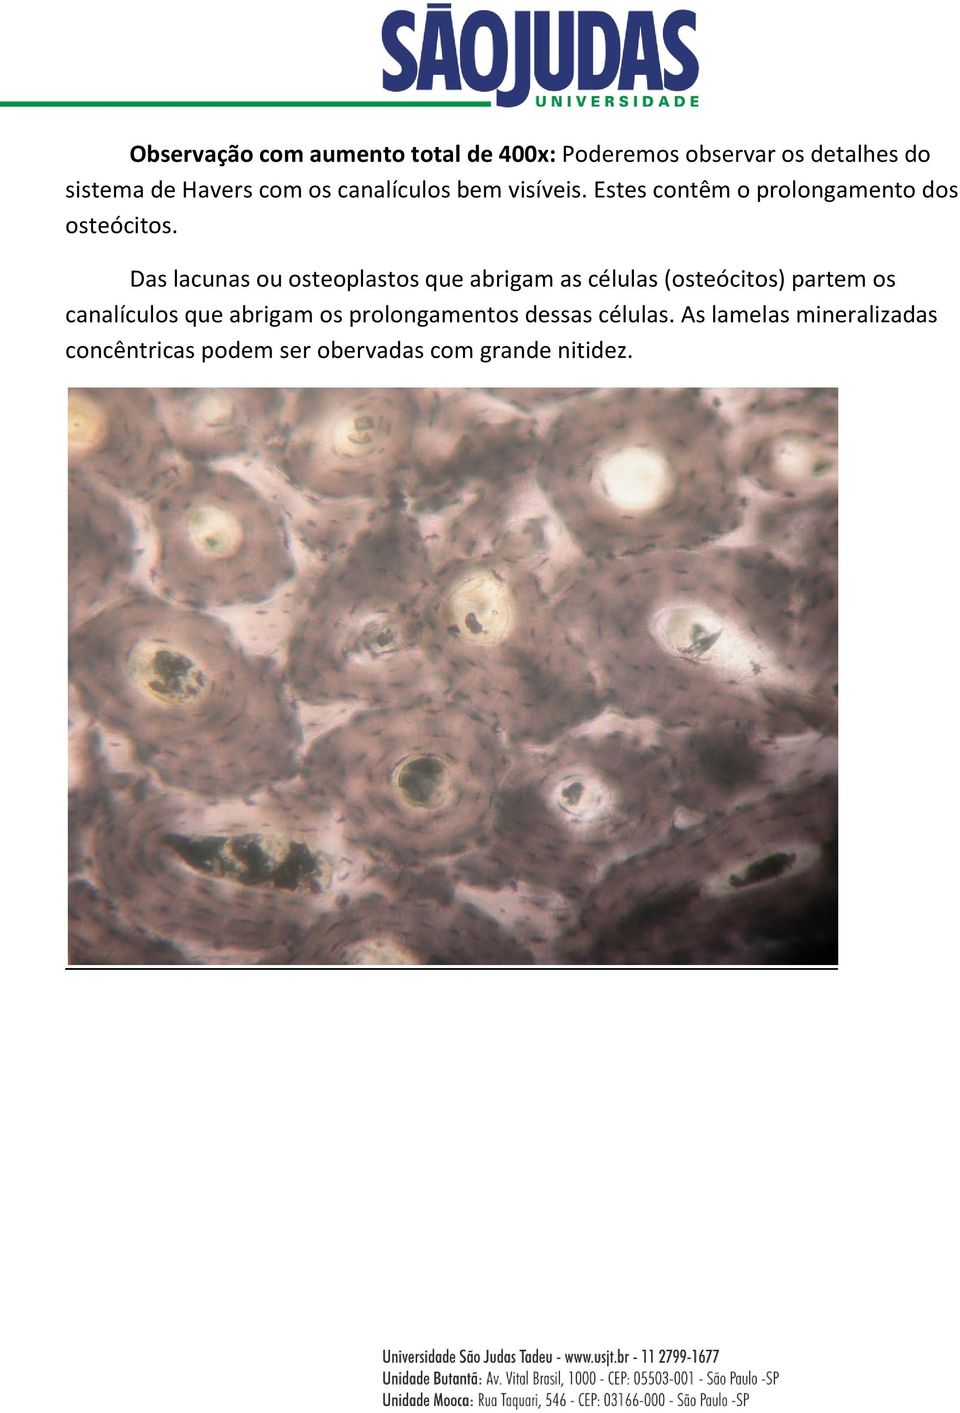 Das lacunas ou osteoplastos que abrigam as células (osteócitos) partem os canalículos que